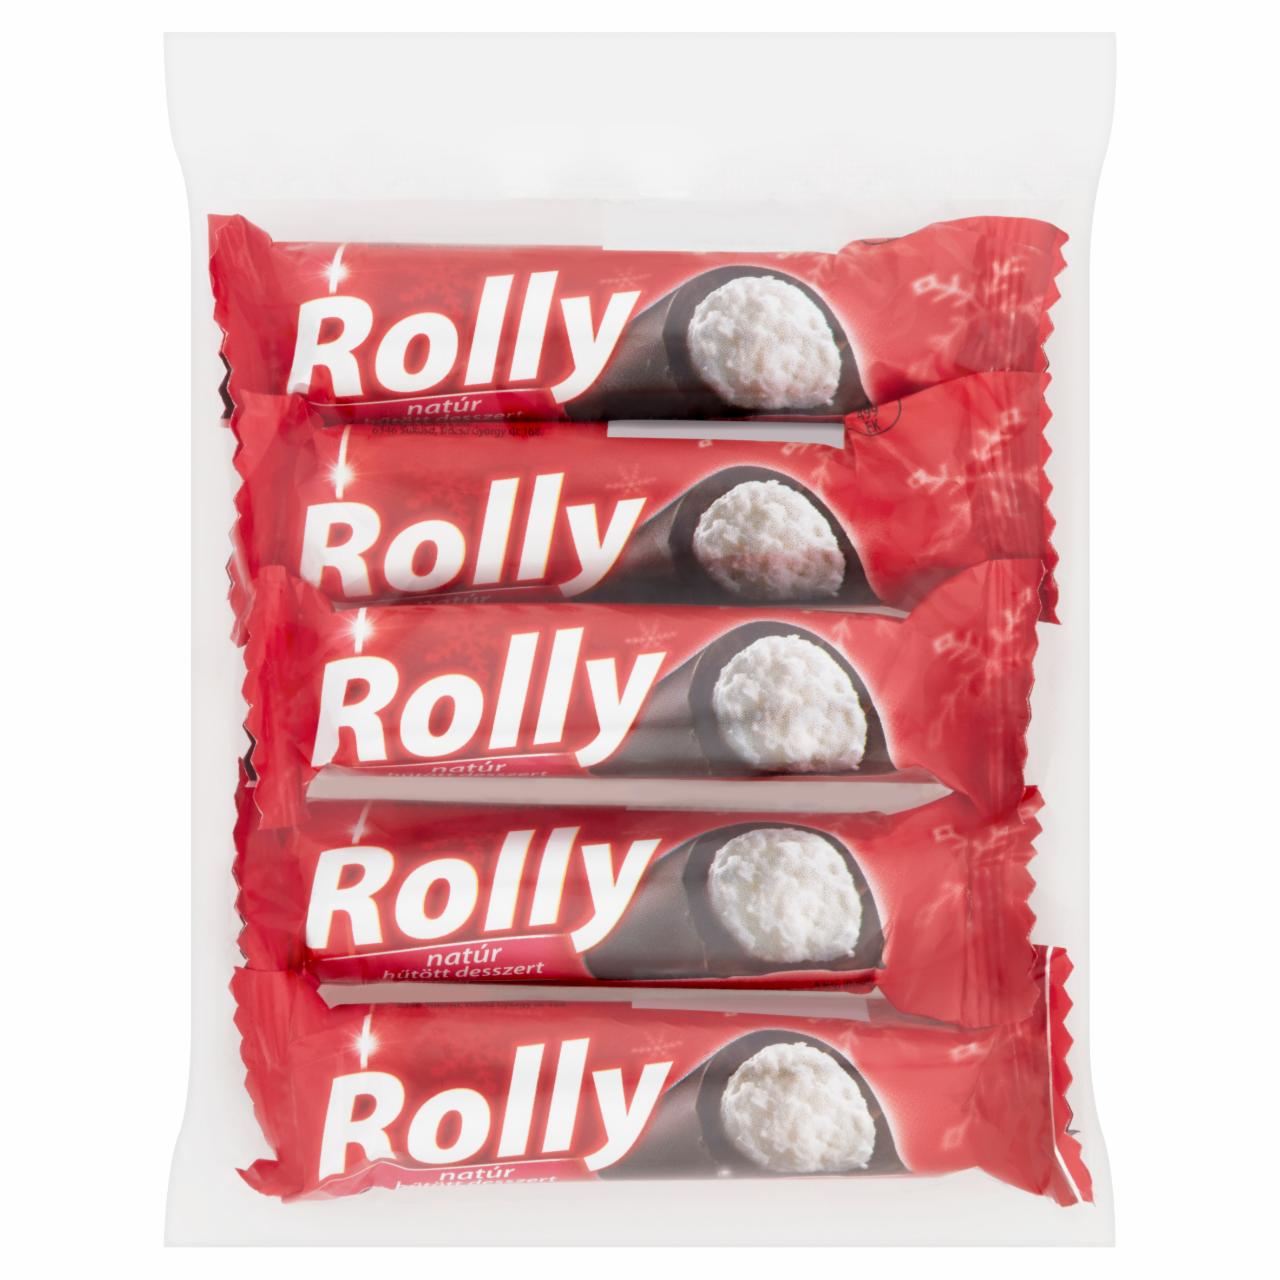 Képek - Rolly natúr hűtött desszert 5 x 30 g